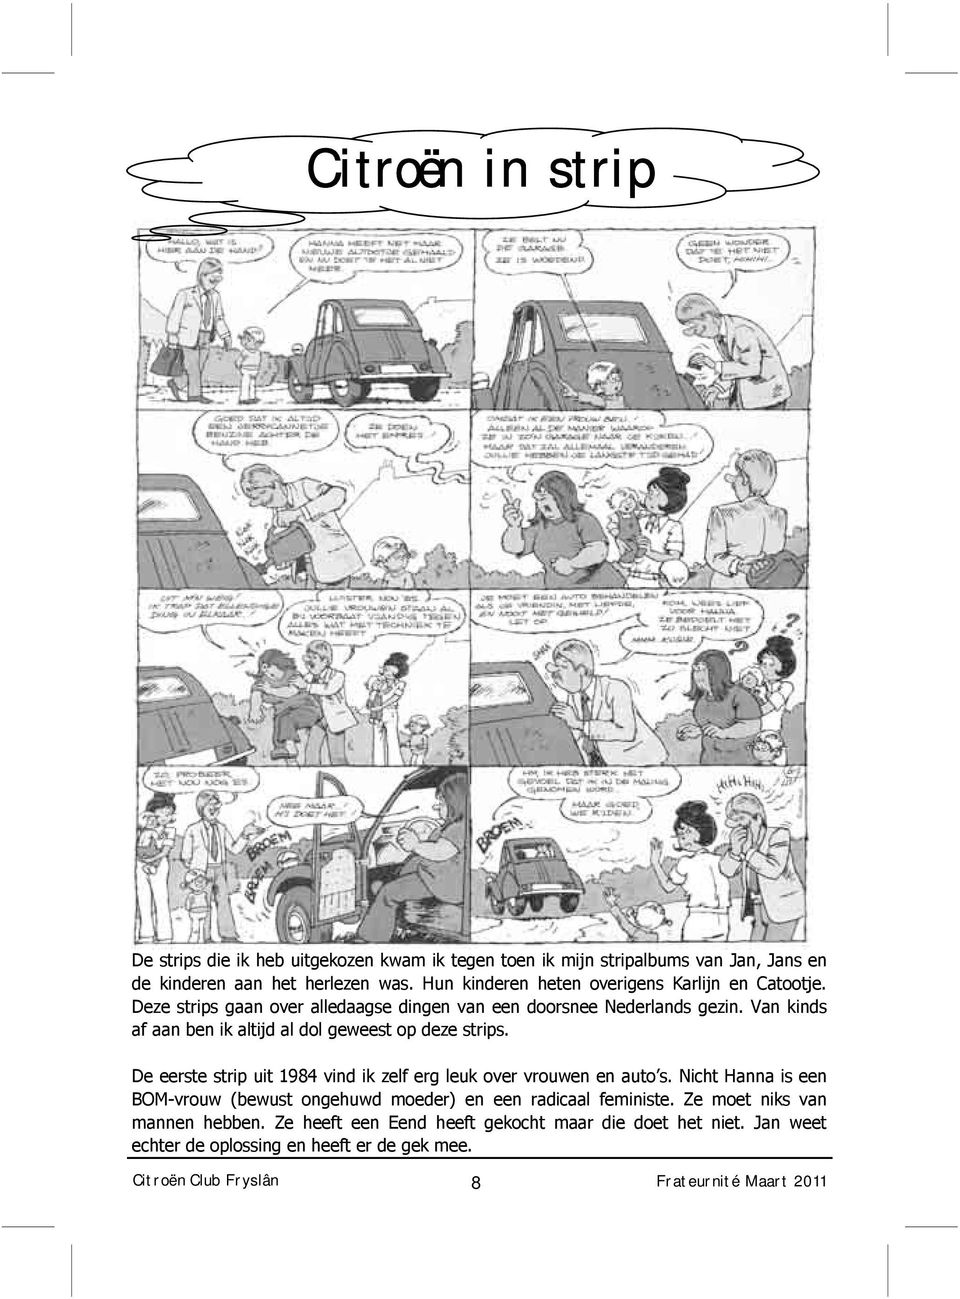 Van kinds af aan ben ik altijd al dol geweest op deze strips. De eerste strip uit 1984 vind ik zelf erg leuk over vrouwen en auto s.